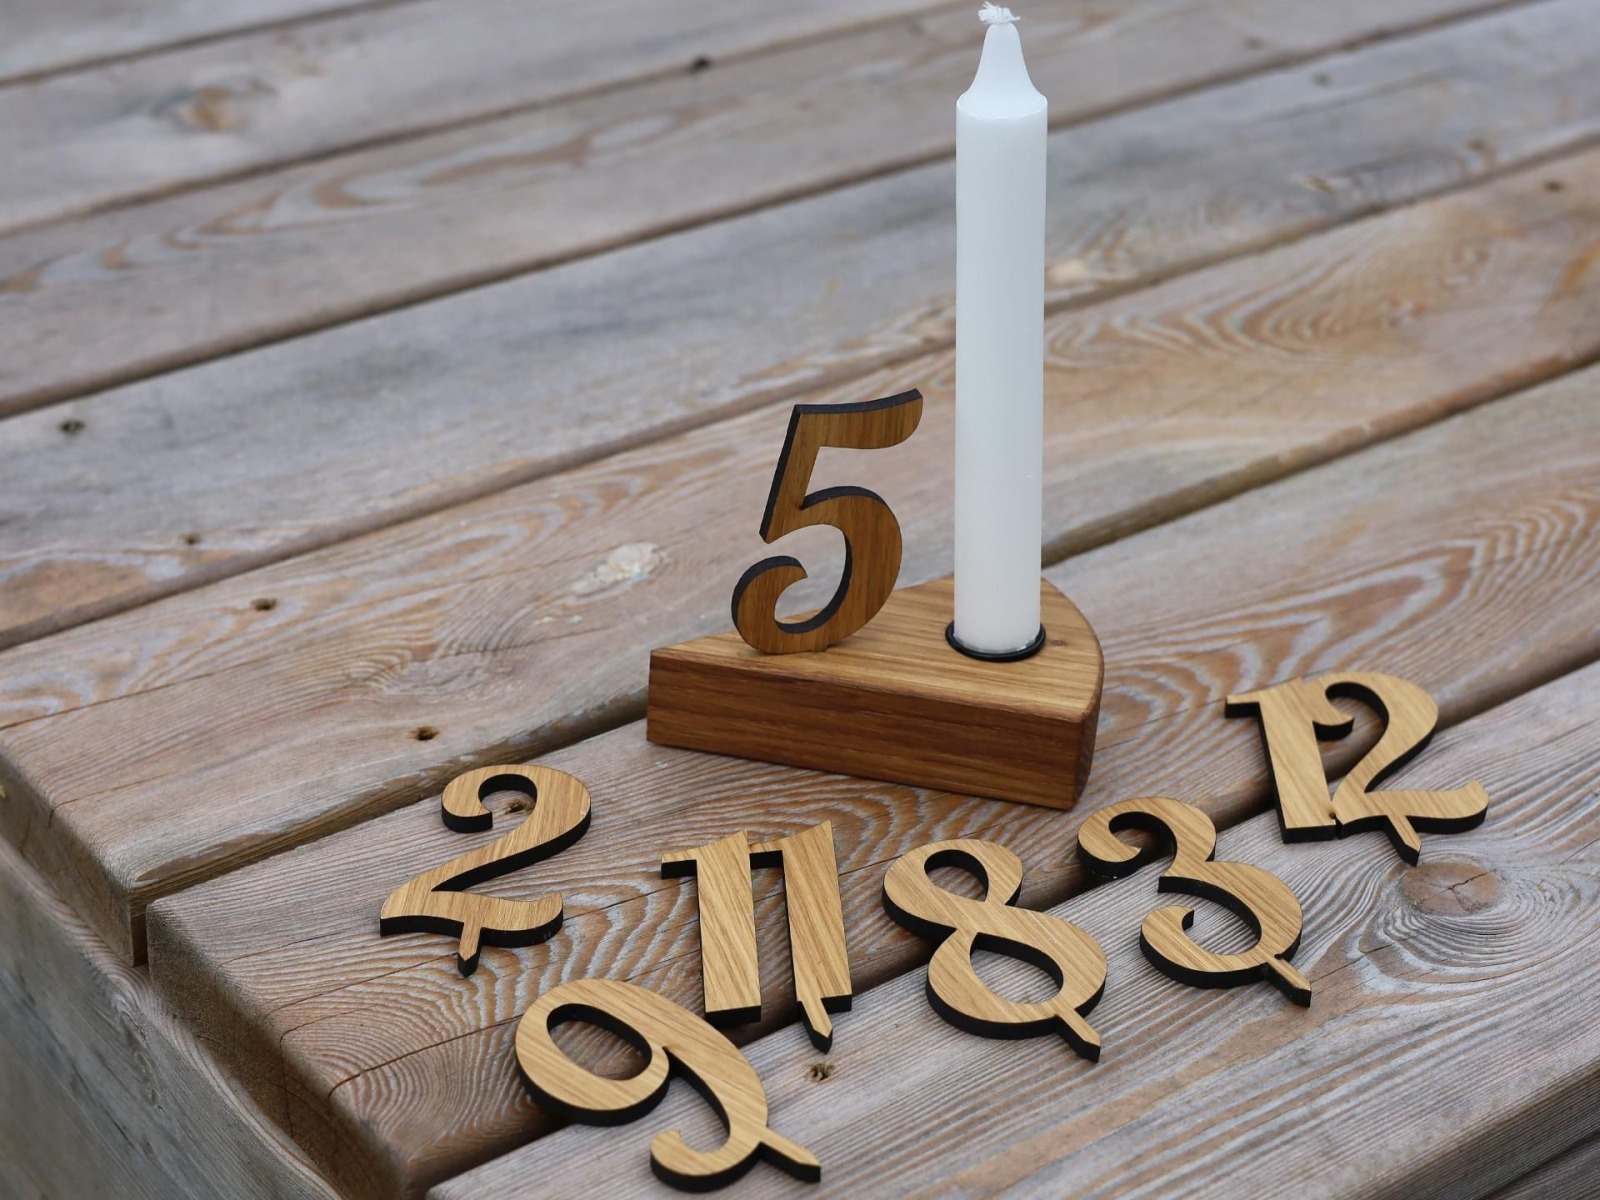 Deko zum Geburtstag, Tortenstück mit Kerze, Kerzentülle und Zahlen von 1-12, aus Holz, Kuchenstüc